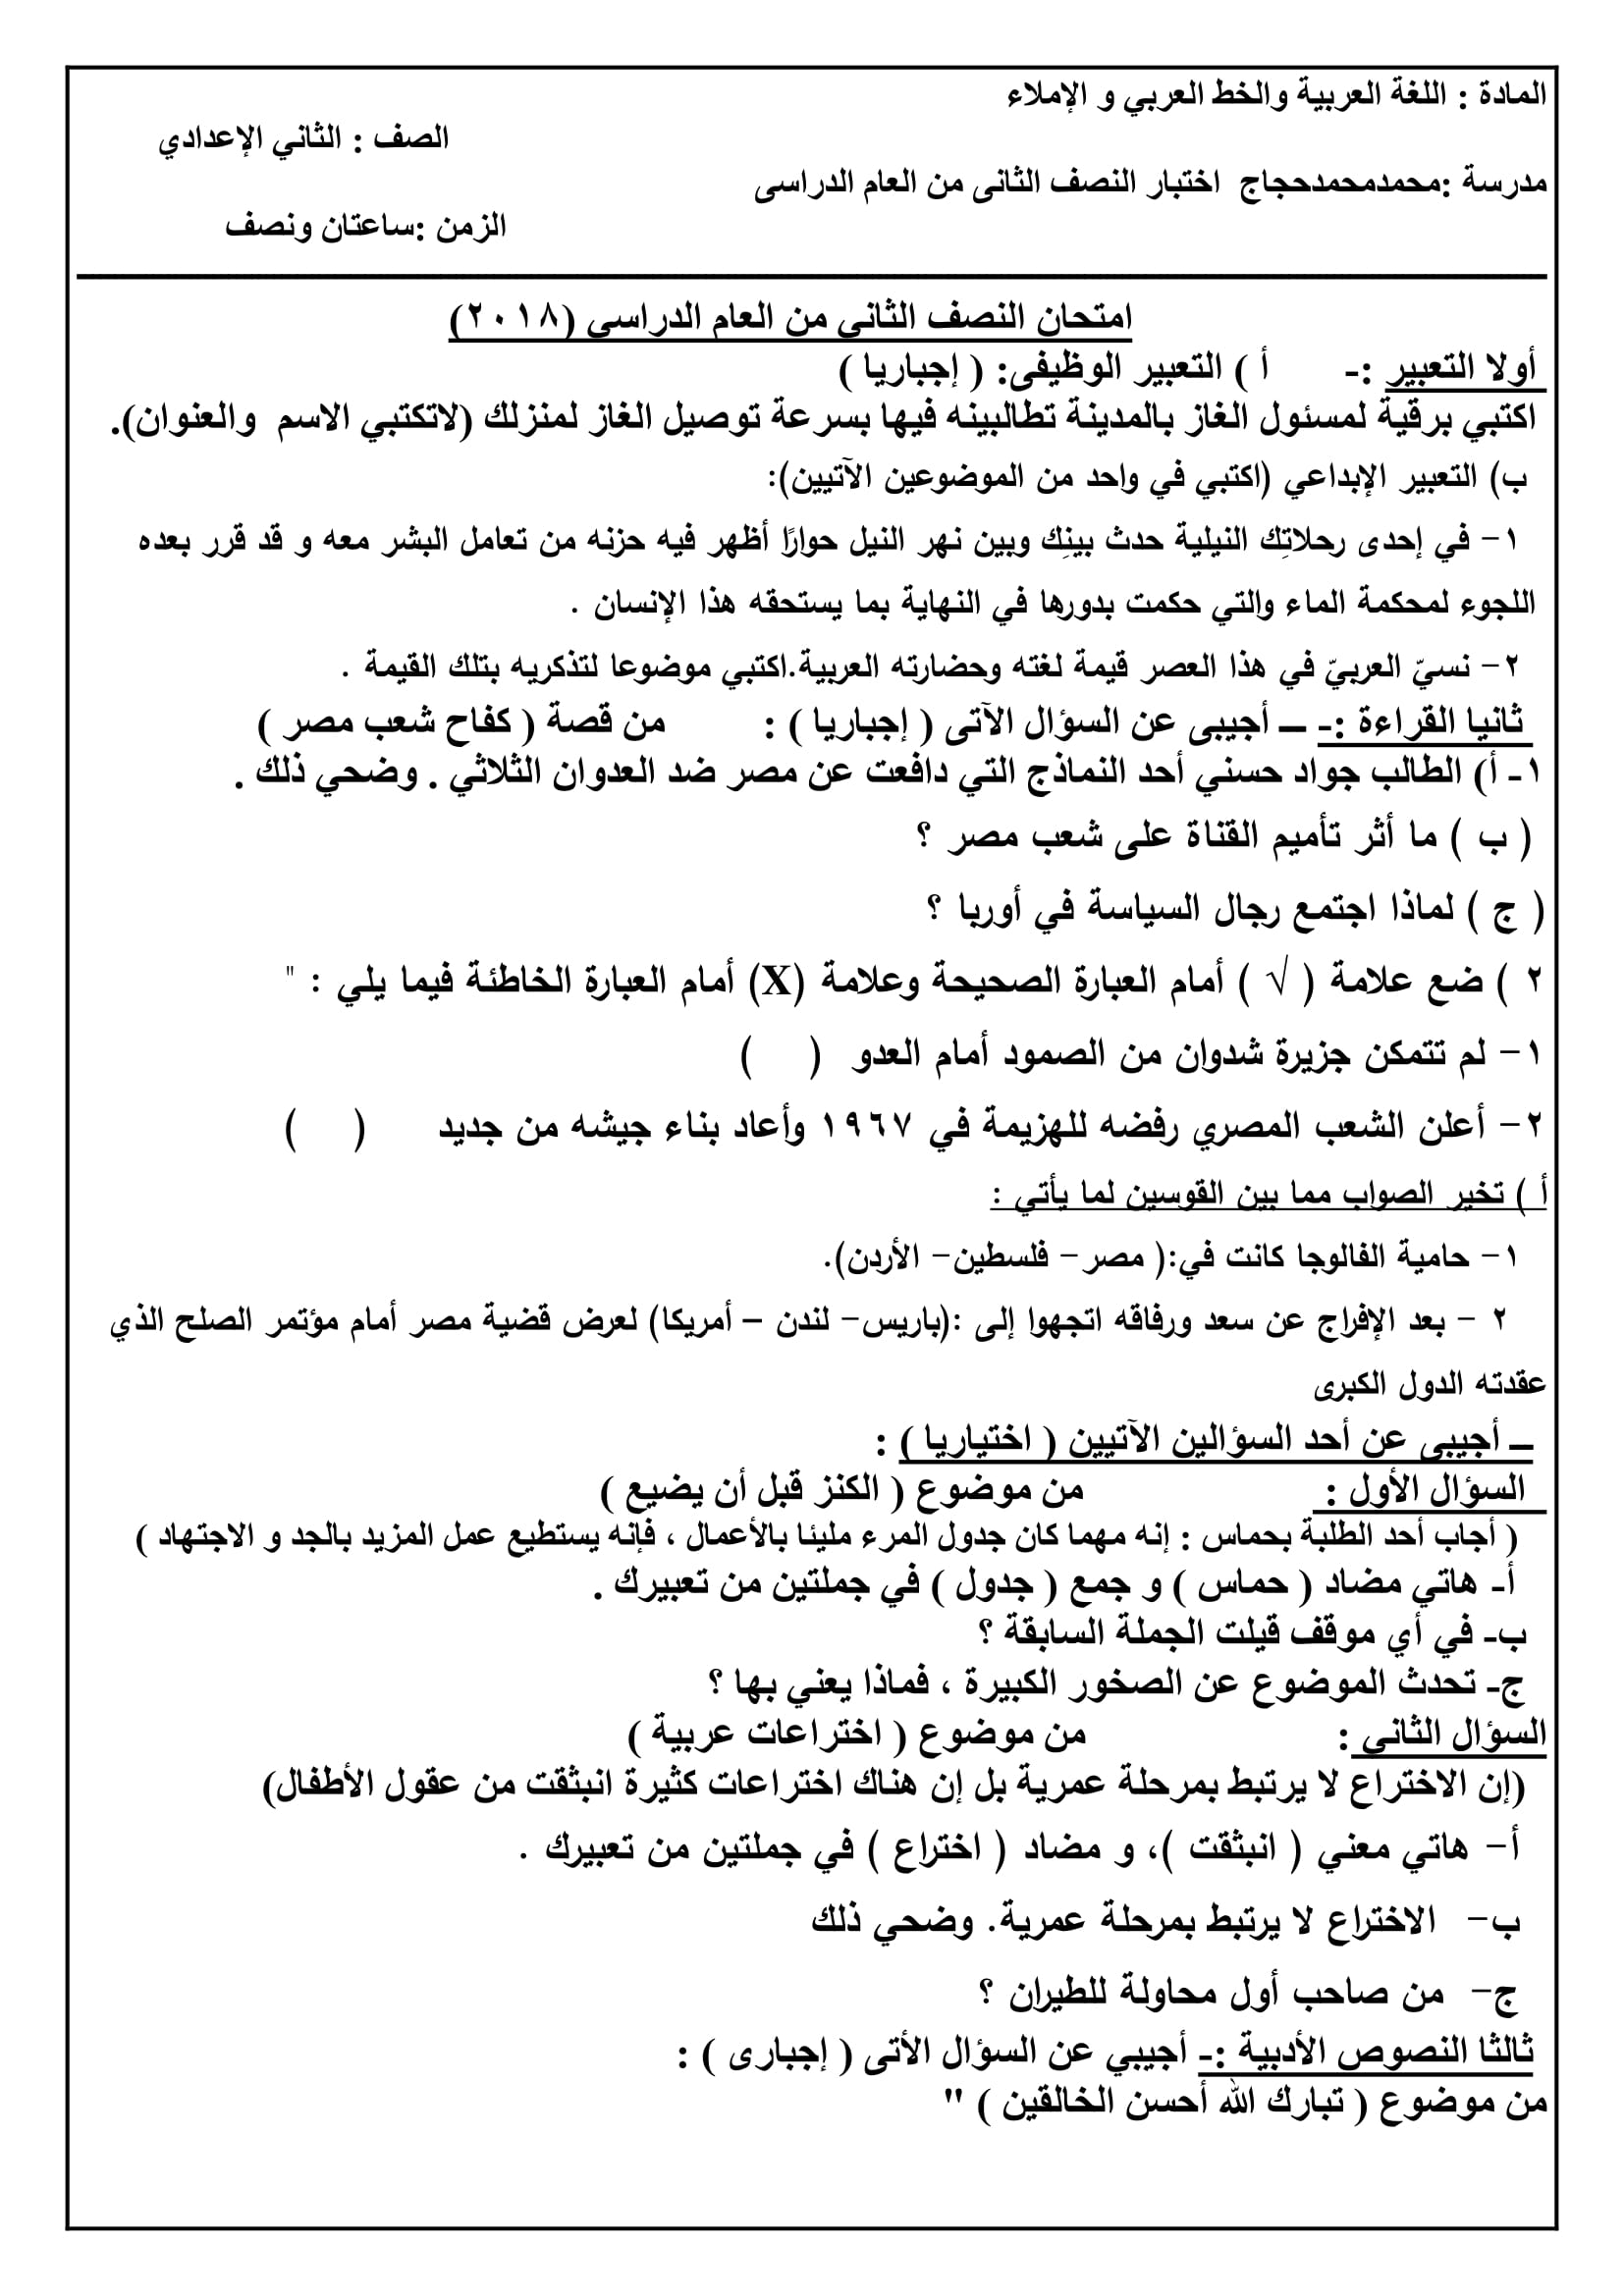 امتحان مطابق لمواصفات هذا العام فى اللغة العربية للصف الثانى الاعدادى الترم الثانى